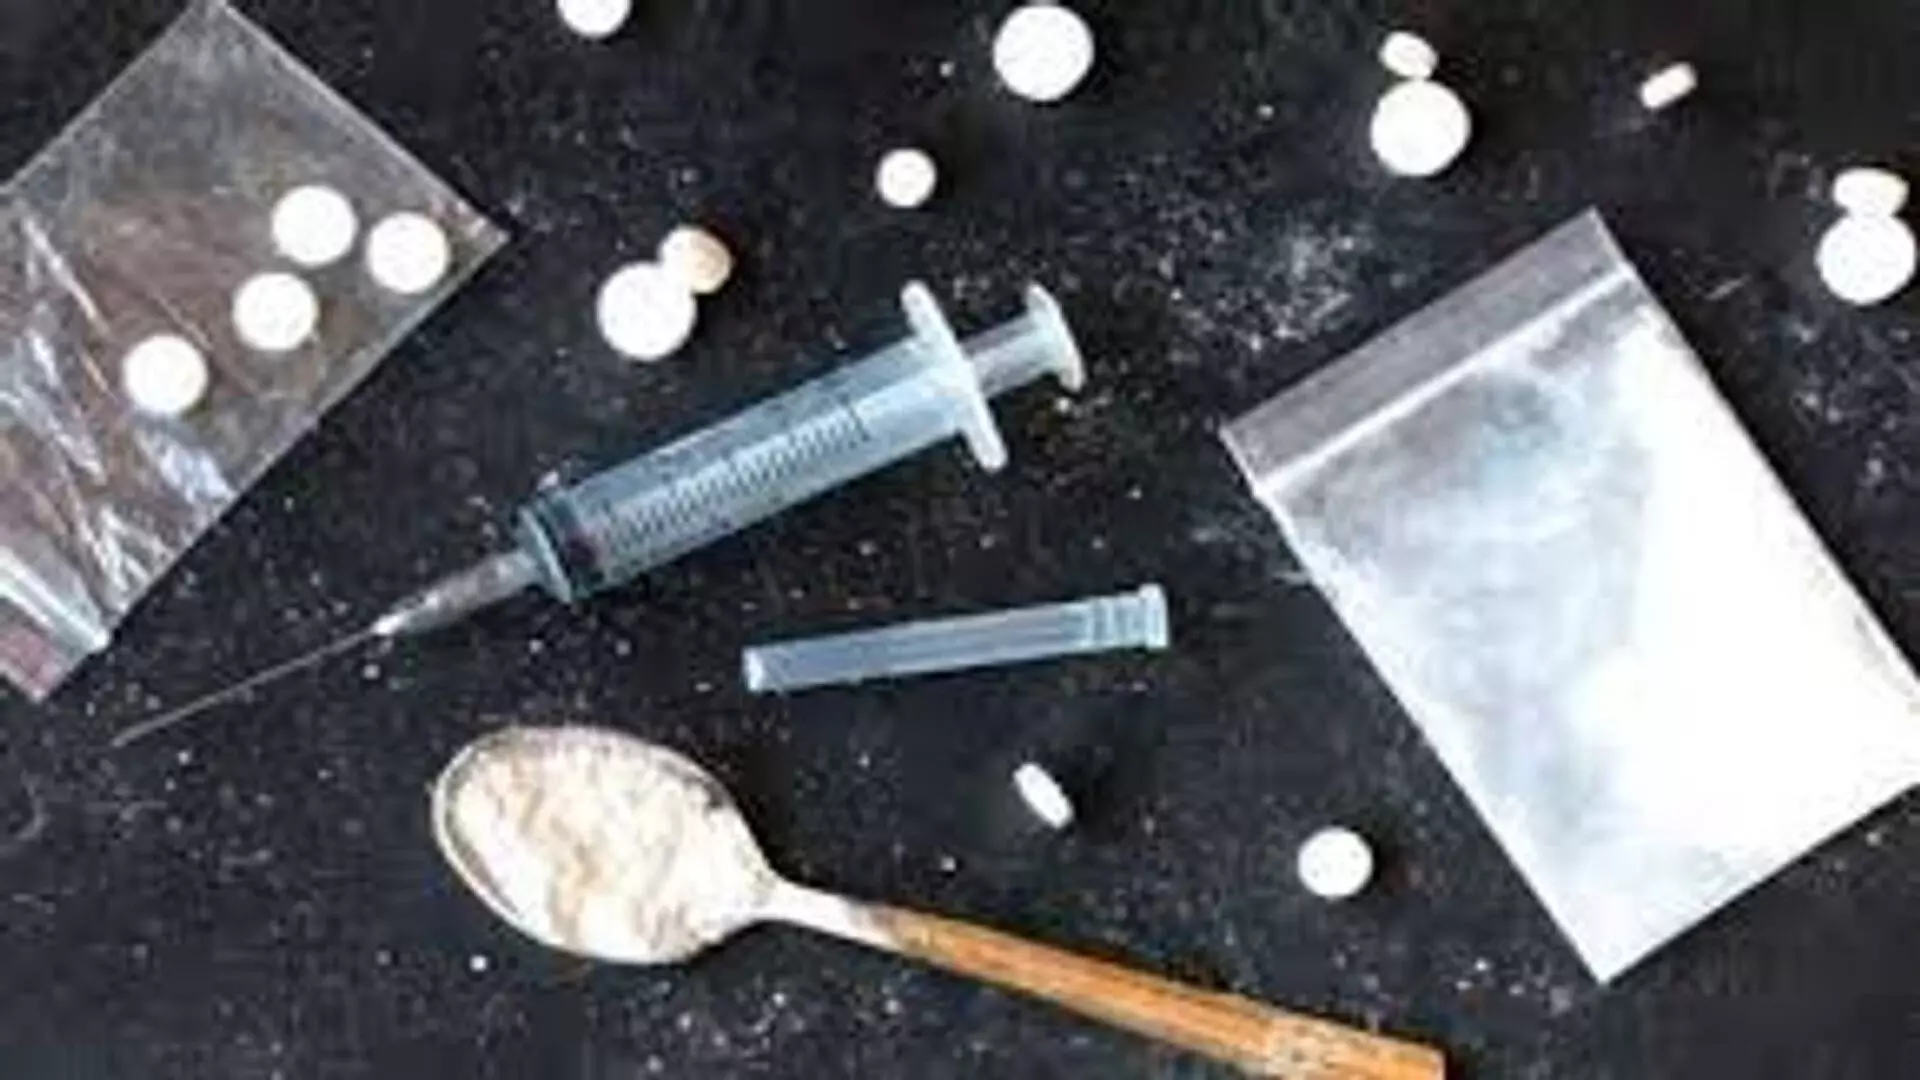 2 करोड़ रुपये की heroin के साथ 2 ड्रग तस्कर गिरफ्तार